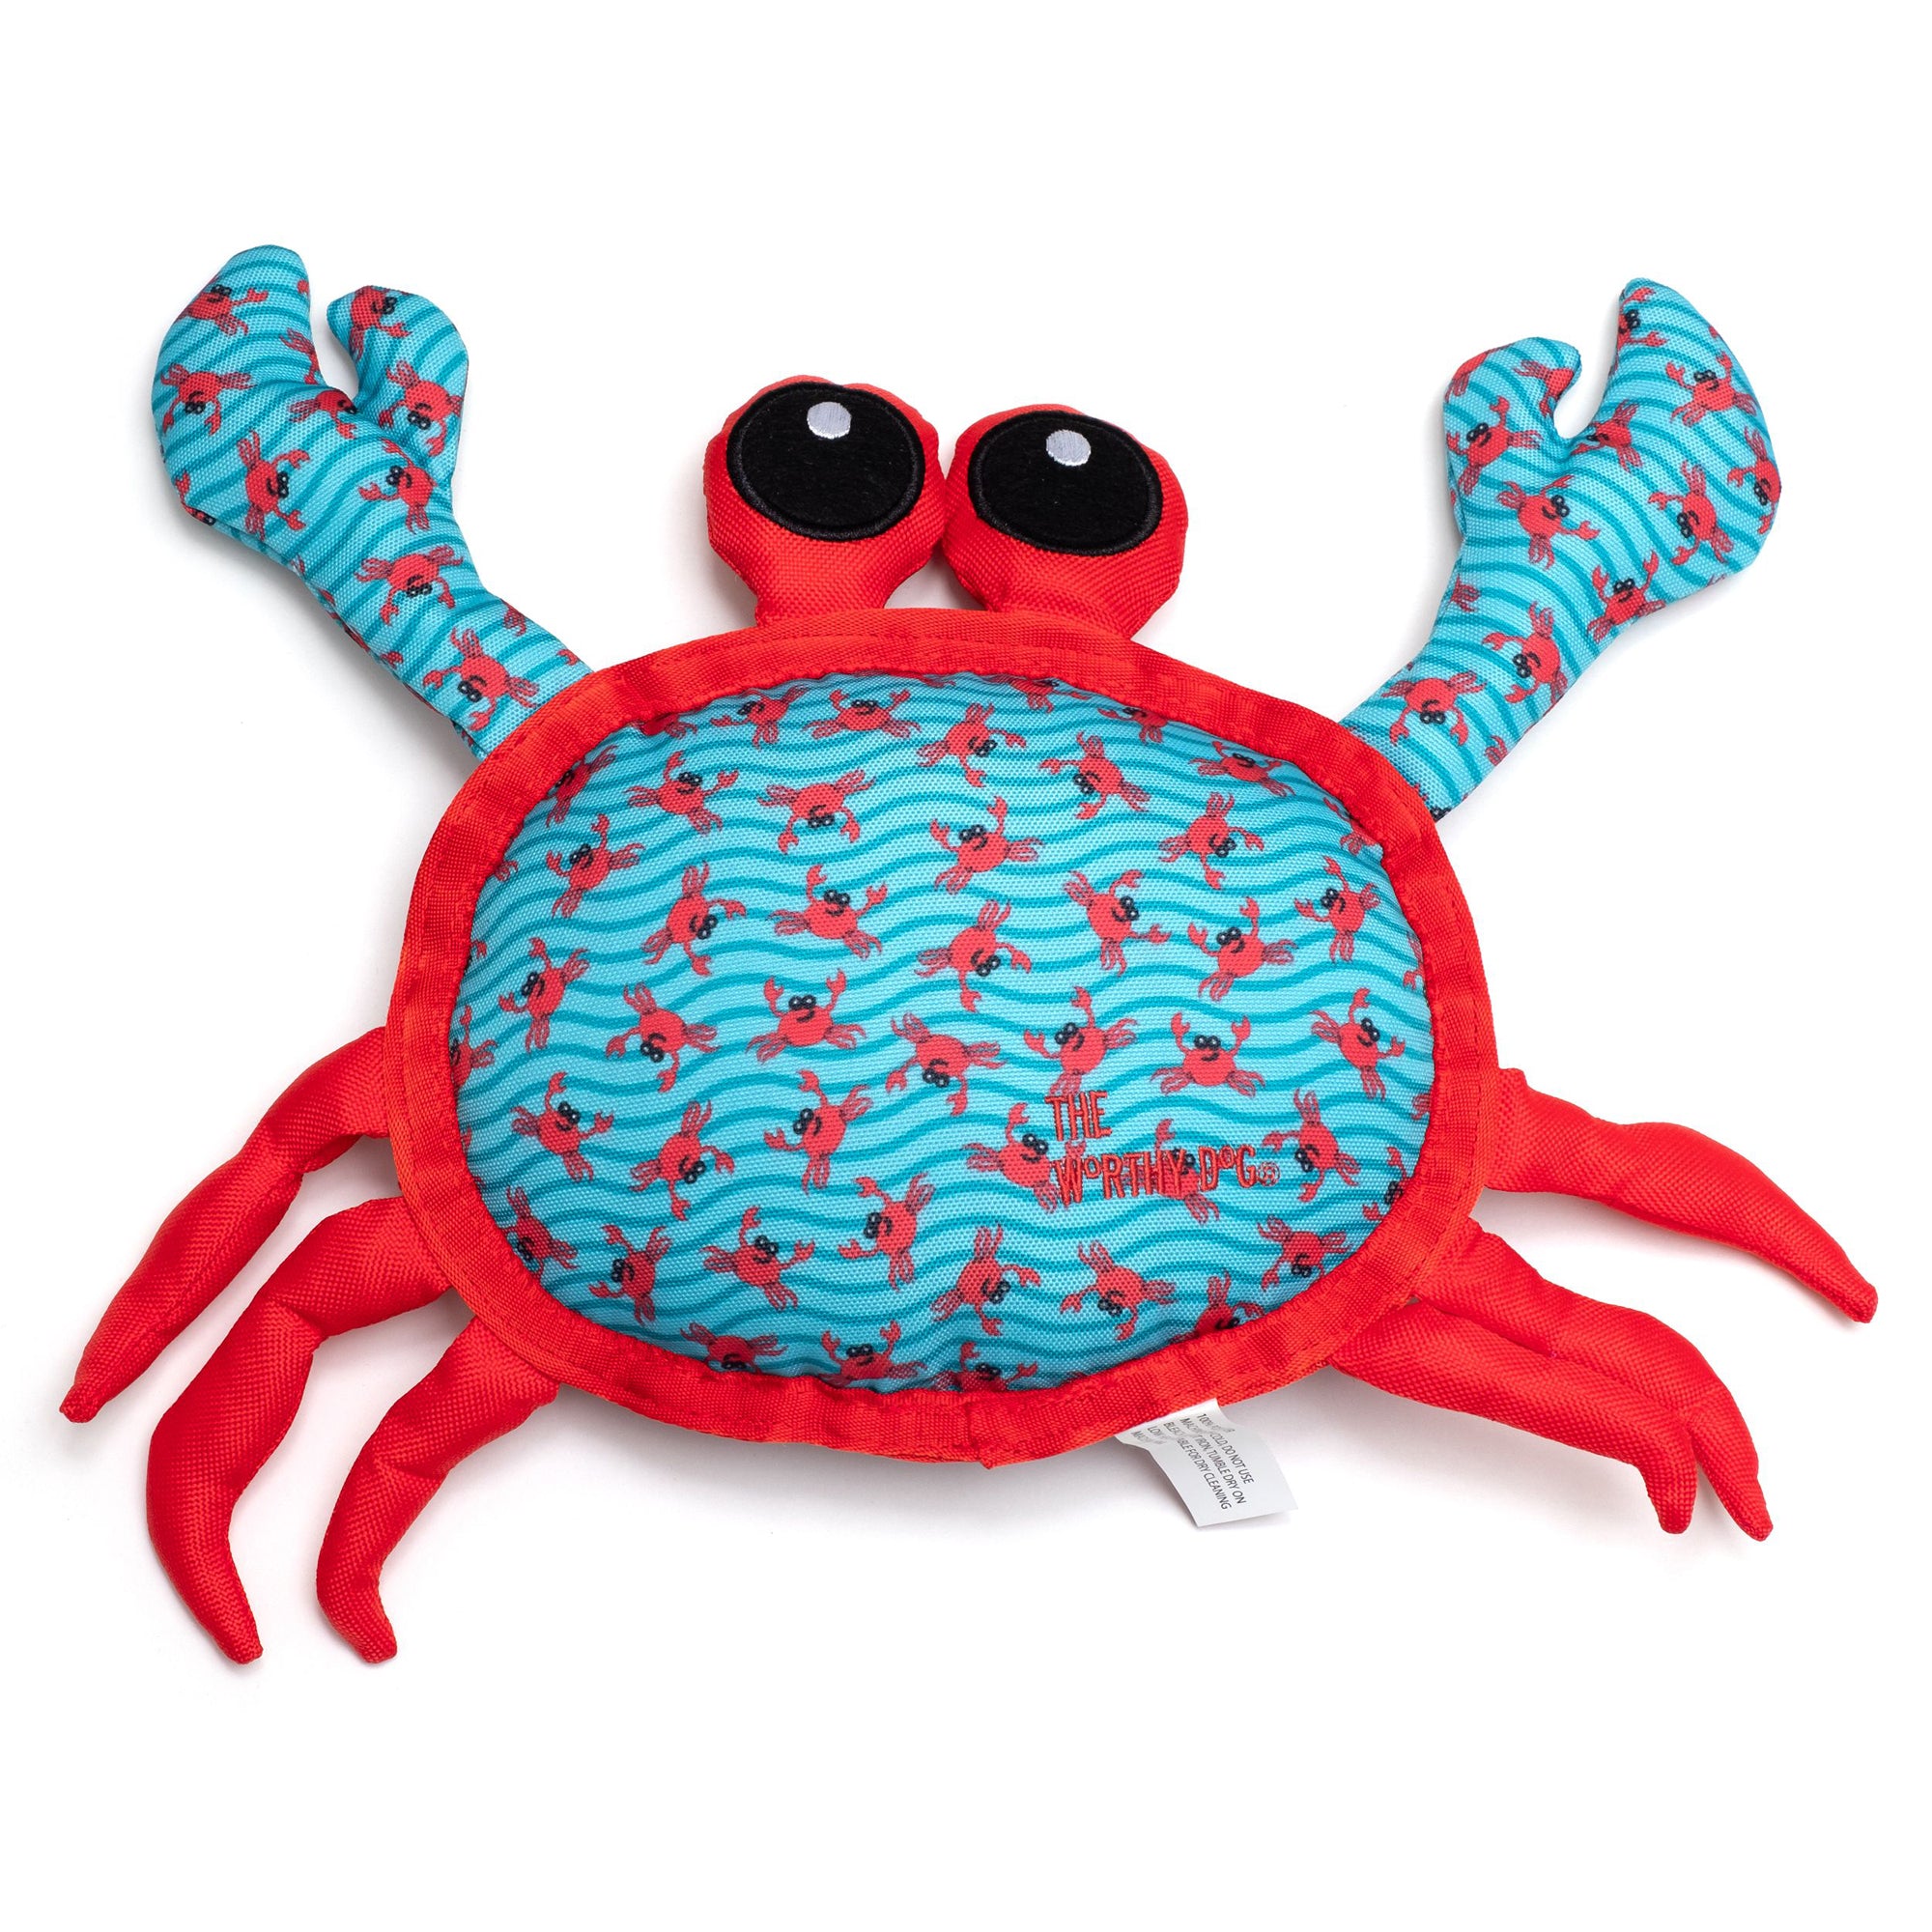 The Worthy Dog Crab Dog Toy